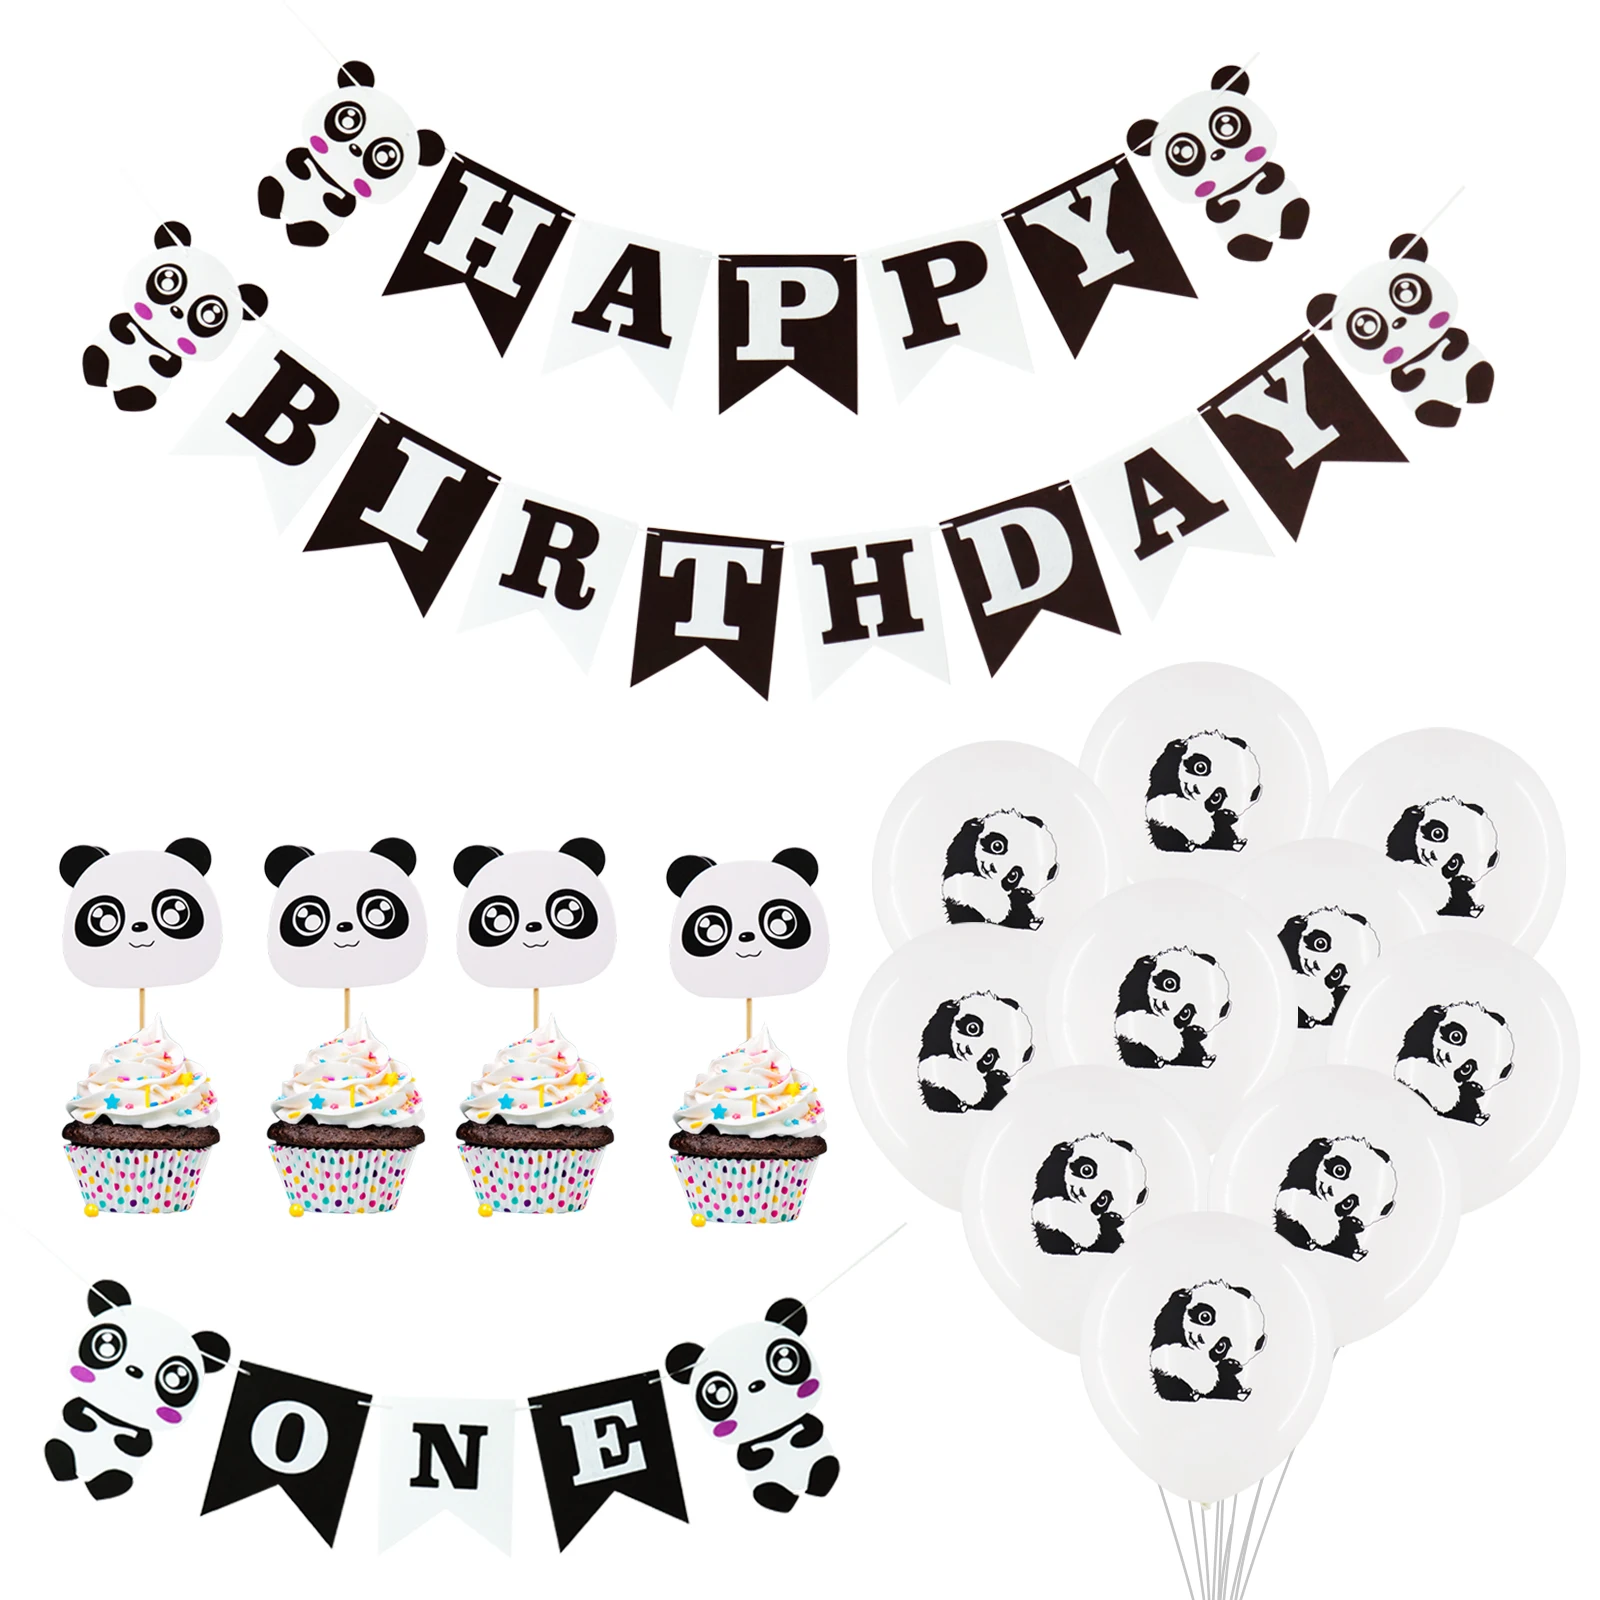 Панда тематическая вечеринка на день рождения украшения мультфильм панда фольги воздушные шары с днем рождения баннер дети партии украшения поставка